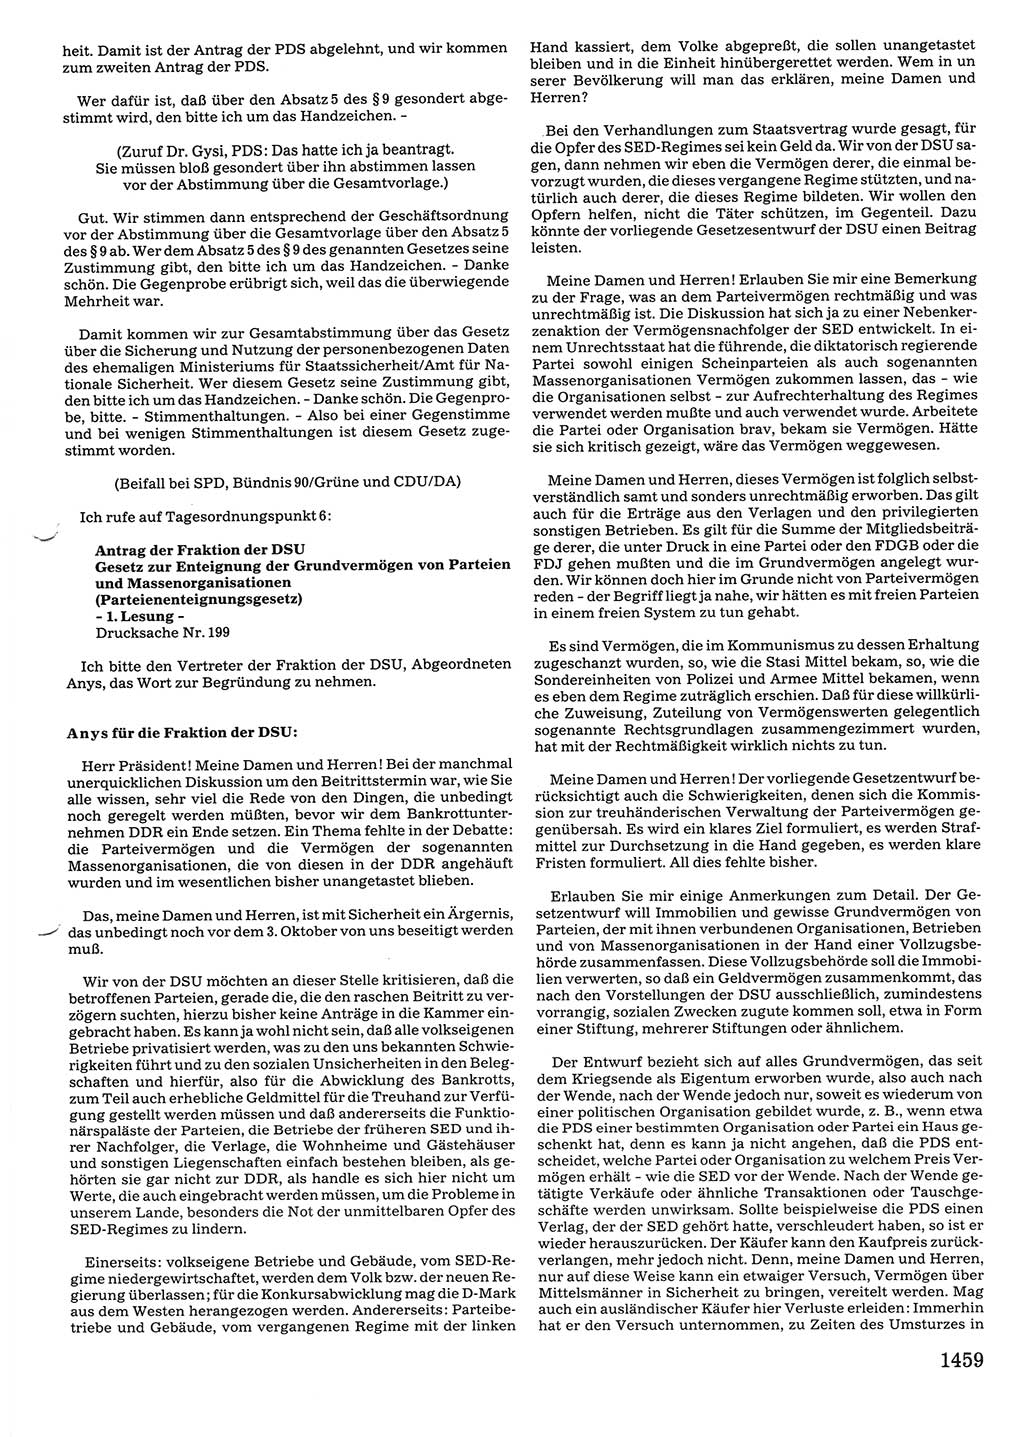 Tagungen der Volkskammer (VK) der Deutschen Demokratischen Republik (DDR), 10. Wahlperiode 1990, Seite 1459 (VK. DDR 10. WP. 1990, Prot. Tg. 1-38, 5.4.-2.10.1990, S. 1459)